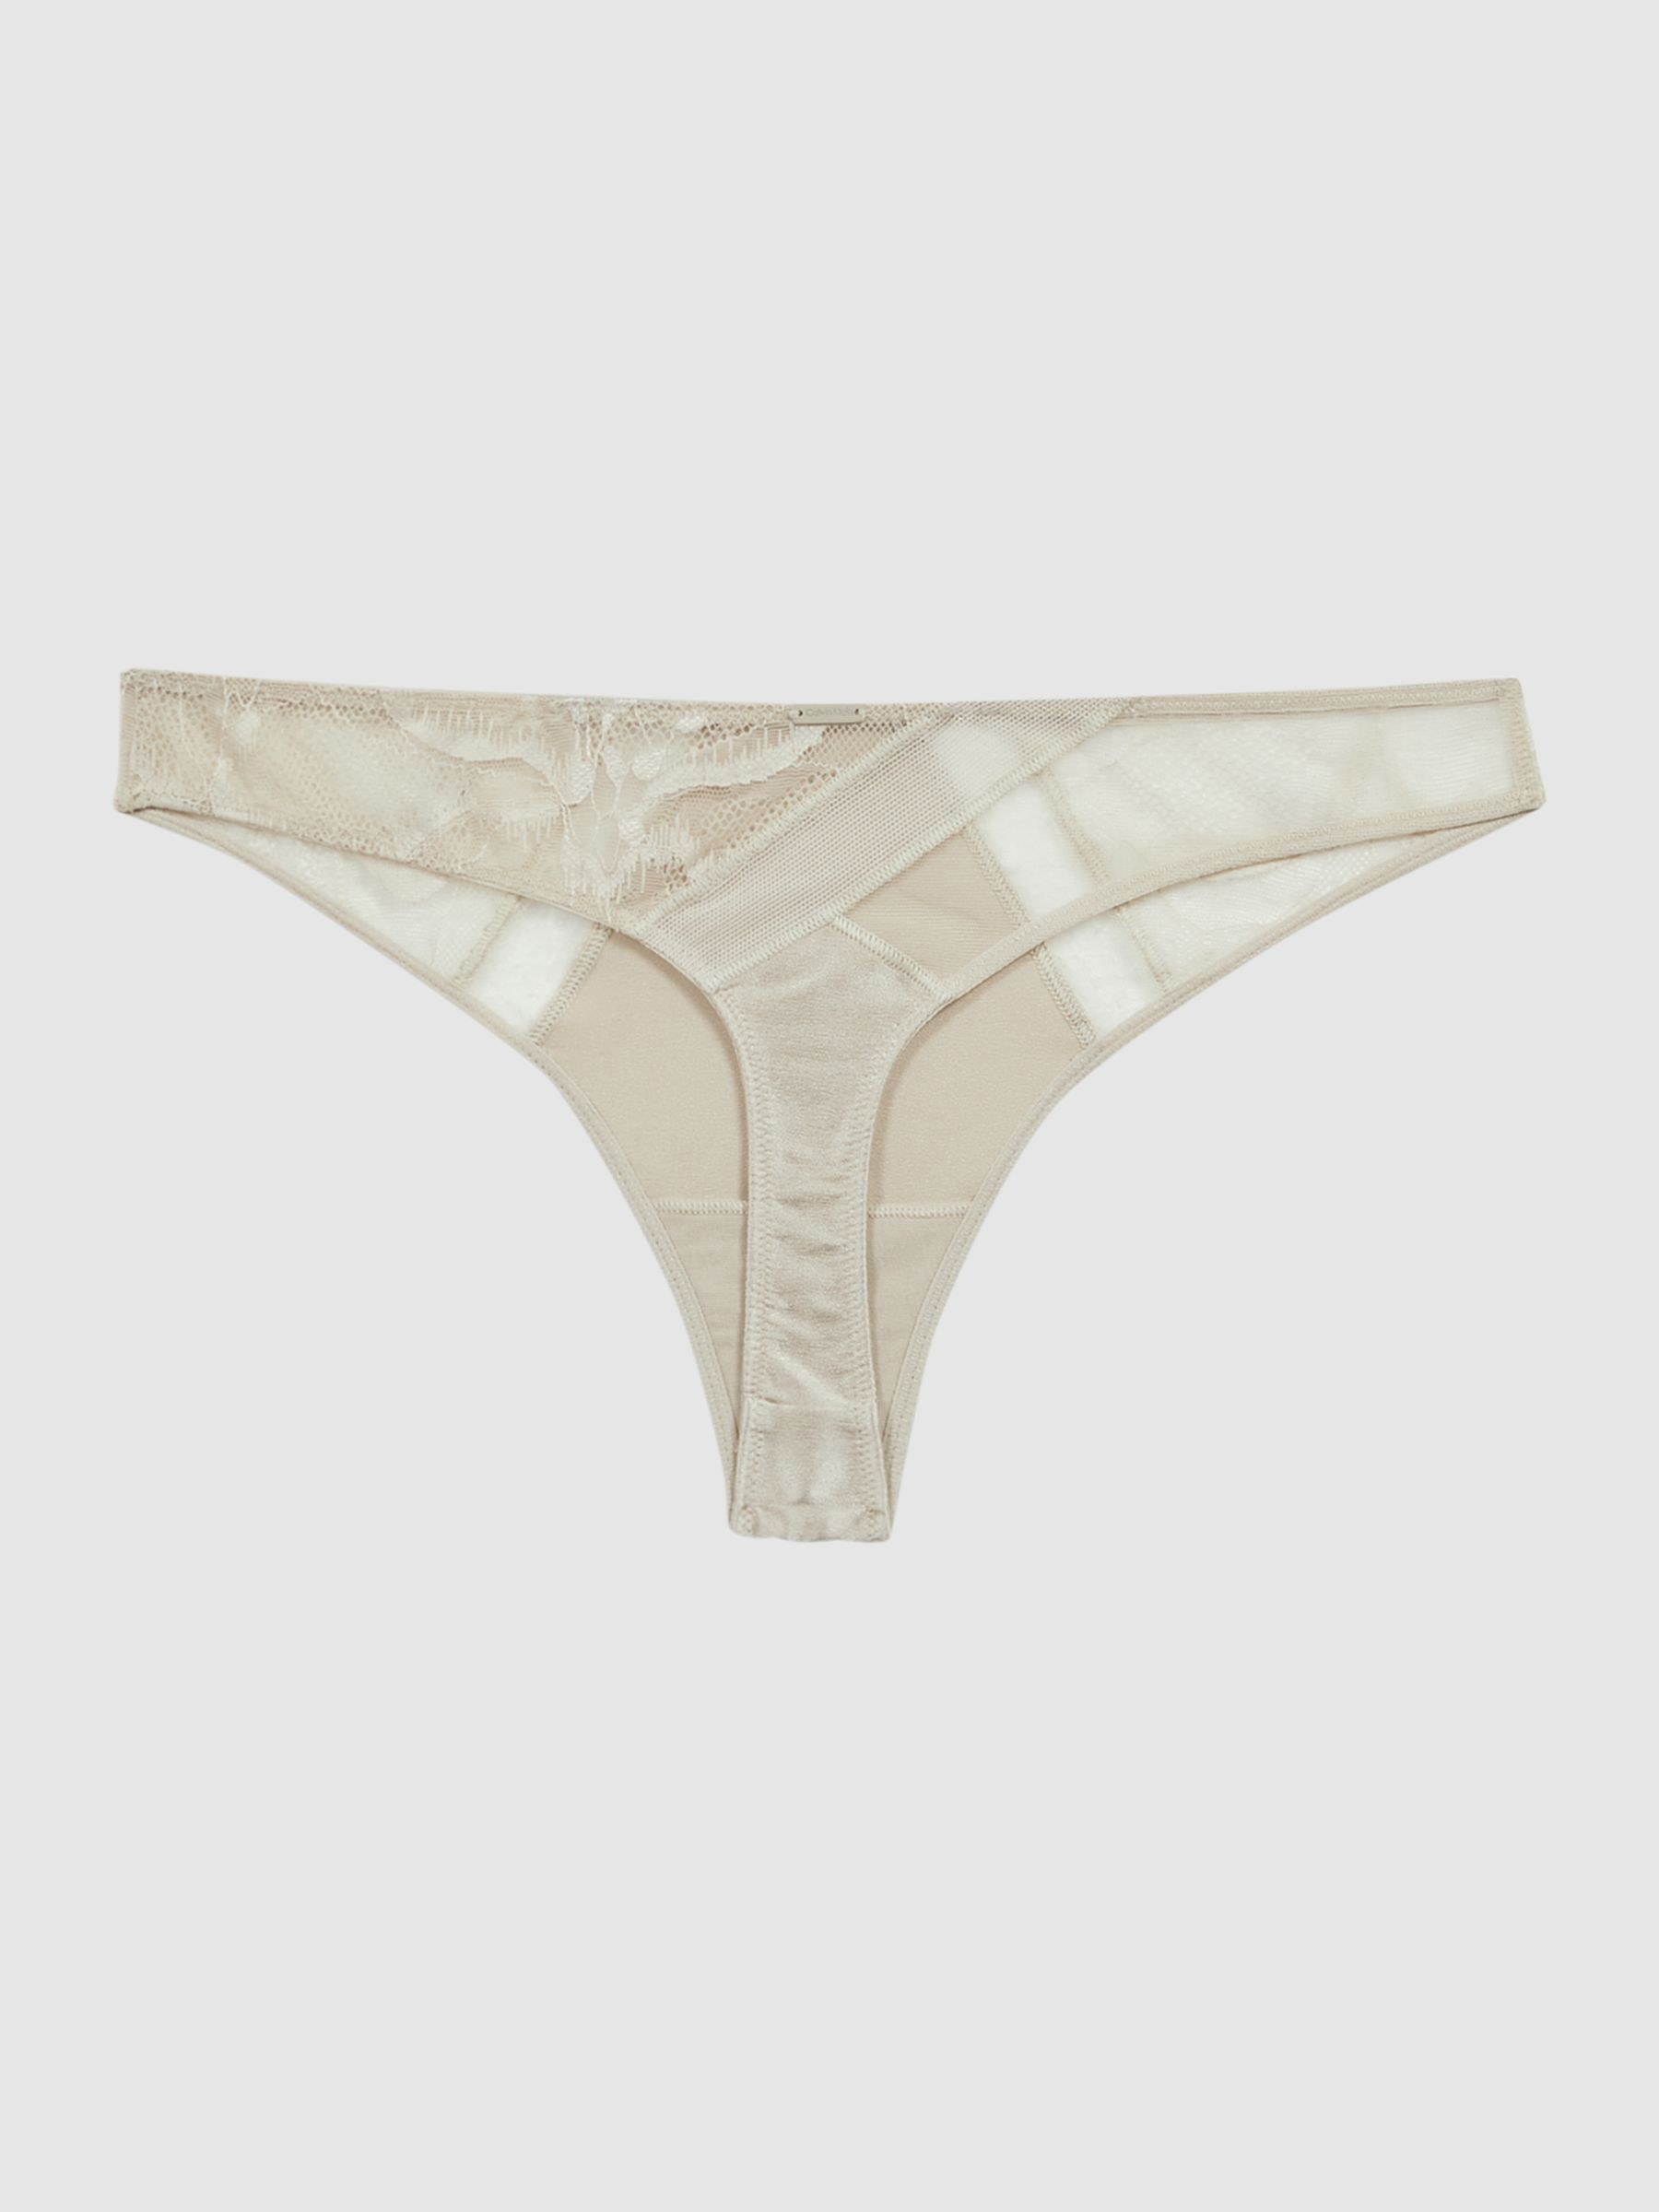 Reiss Calvin Klein Underwear Satin Lace Thong - REISS